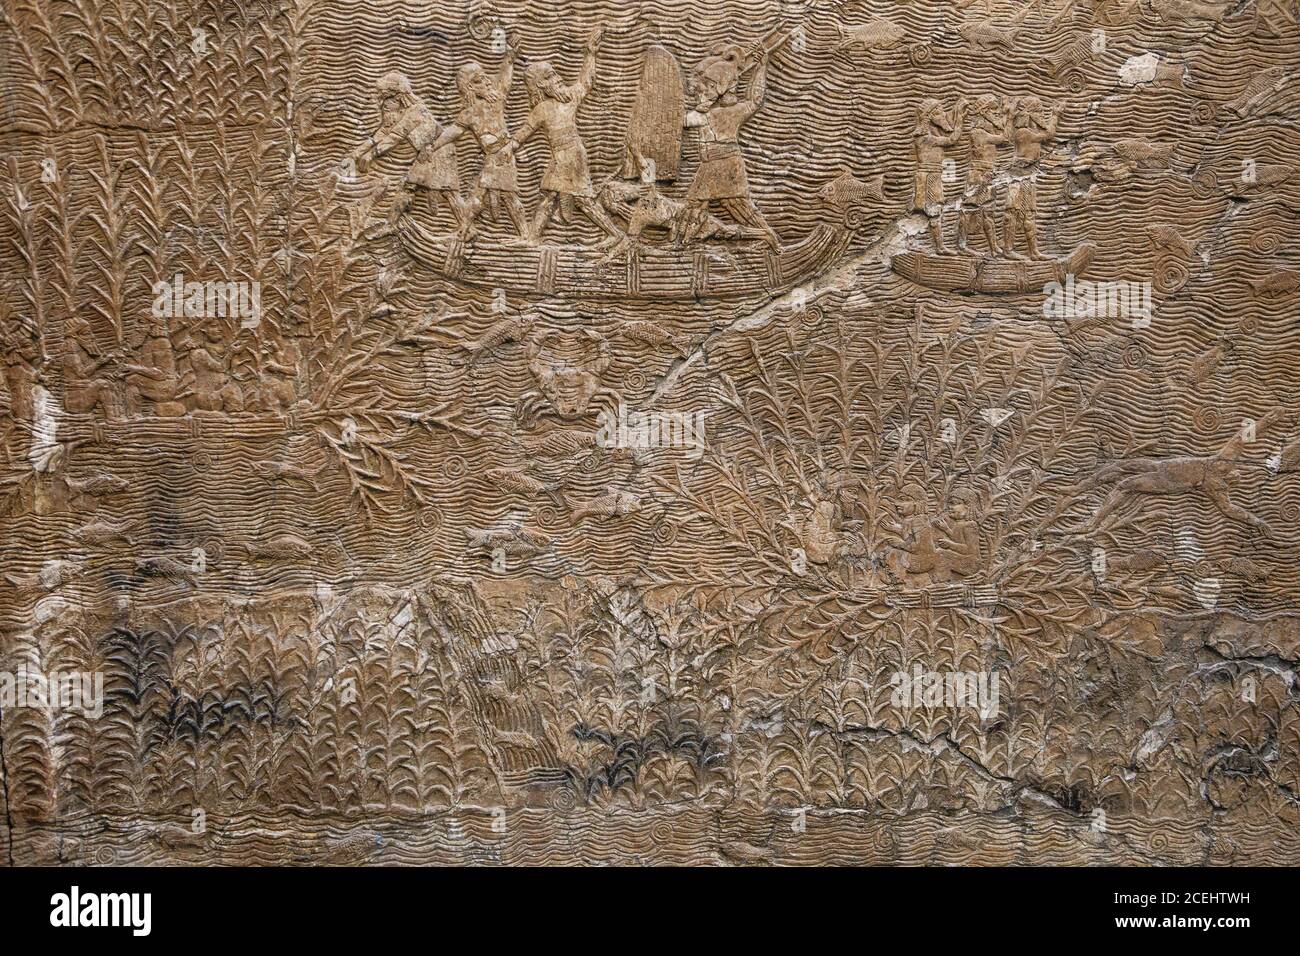 Alte assyrische Steinschnitzerei mit Schrift, BRITISH MUSEUM, London, UK. Wahlkampf im Südirak, Assyrisch, etwa 640-620 v. Chr. von Ninive Stockfoto